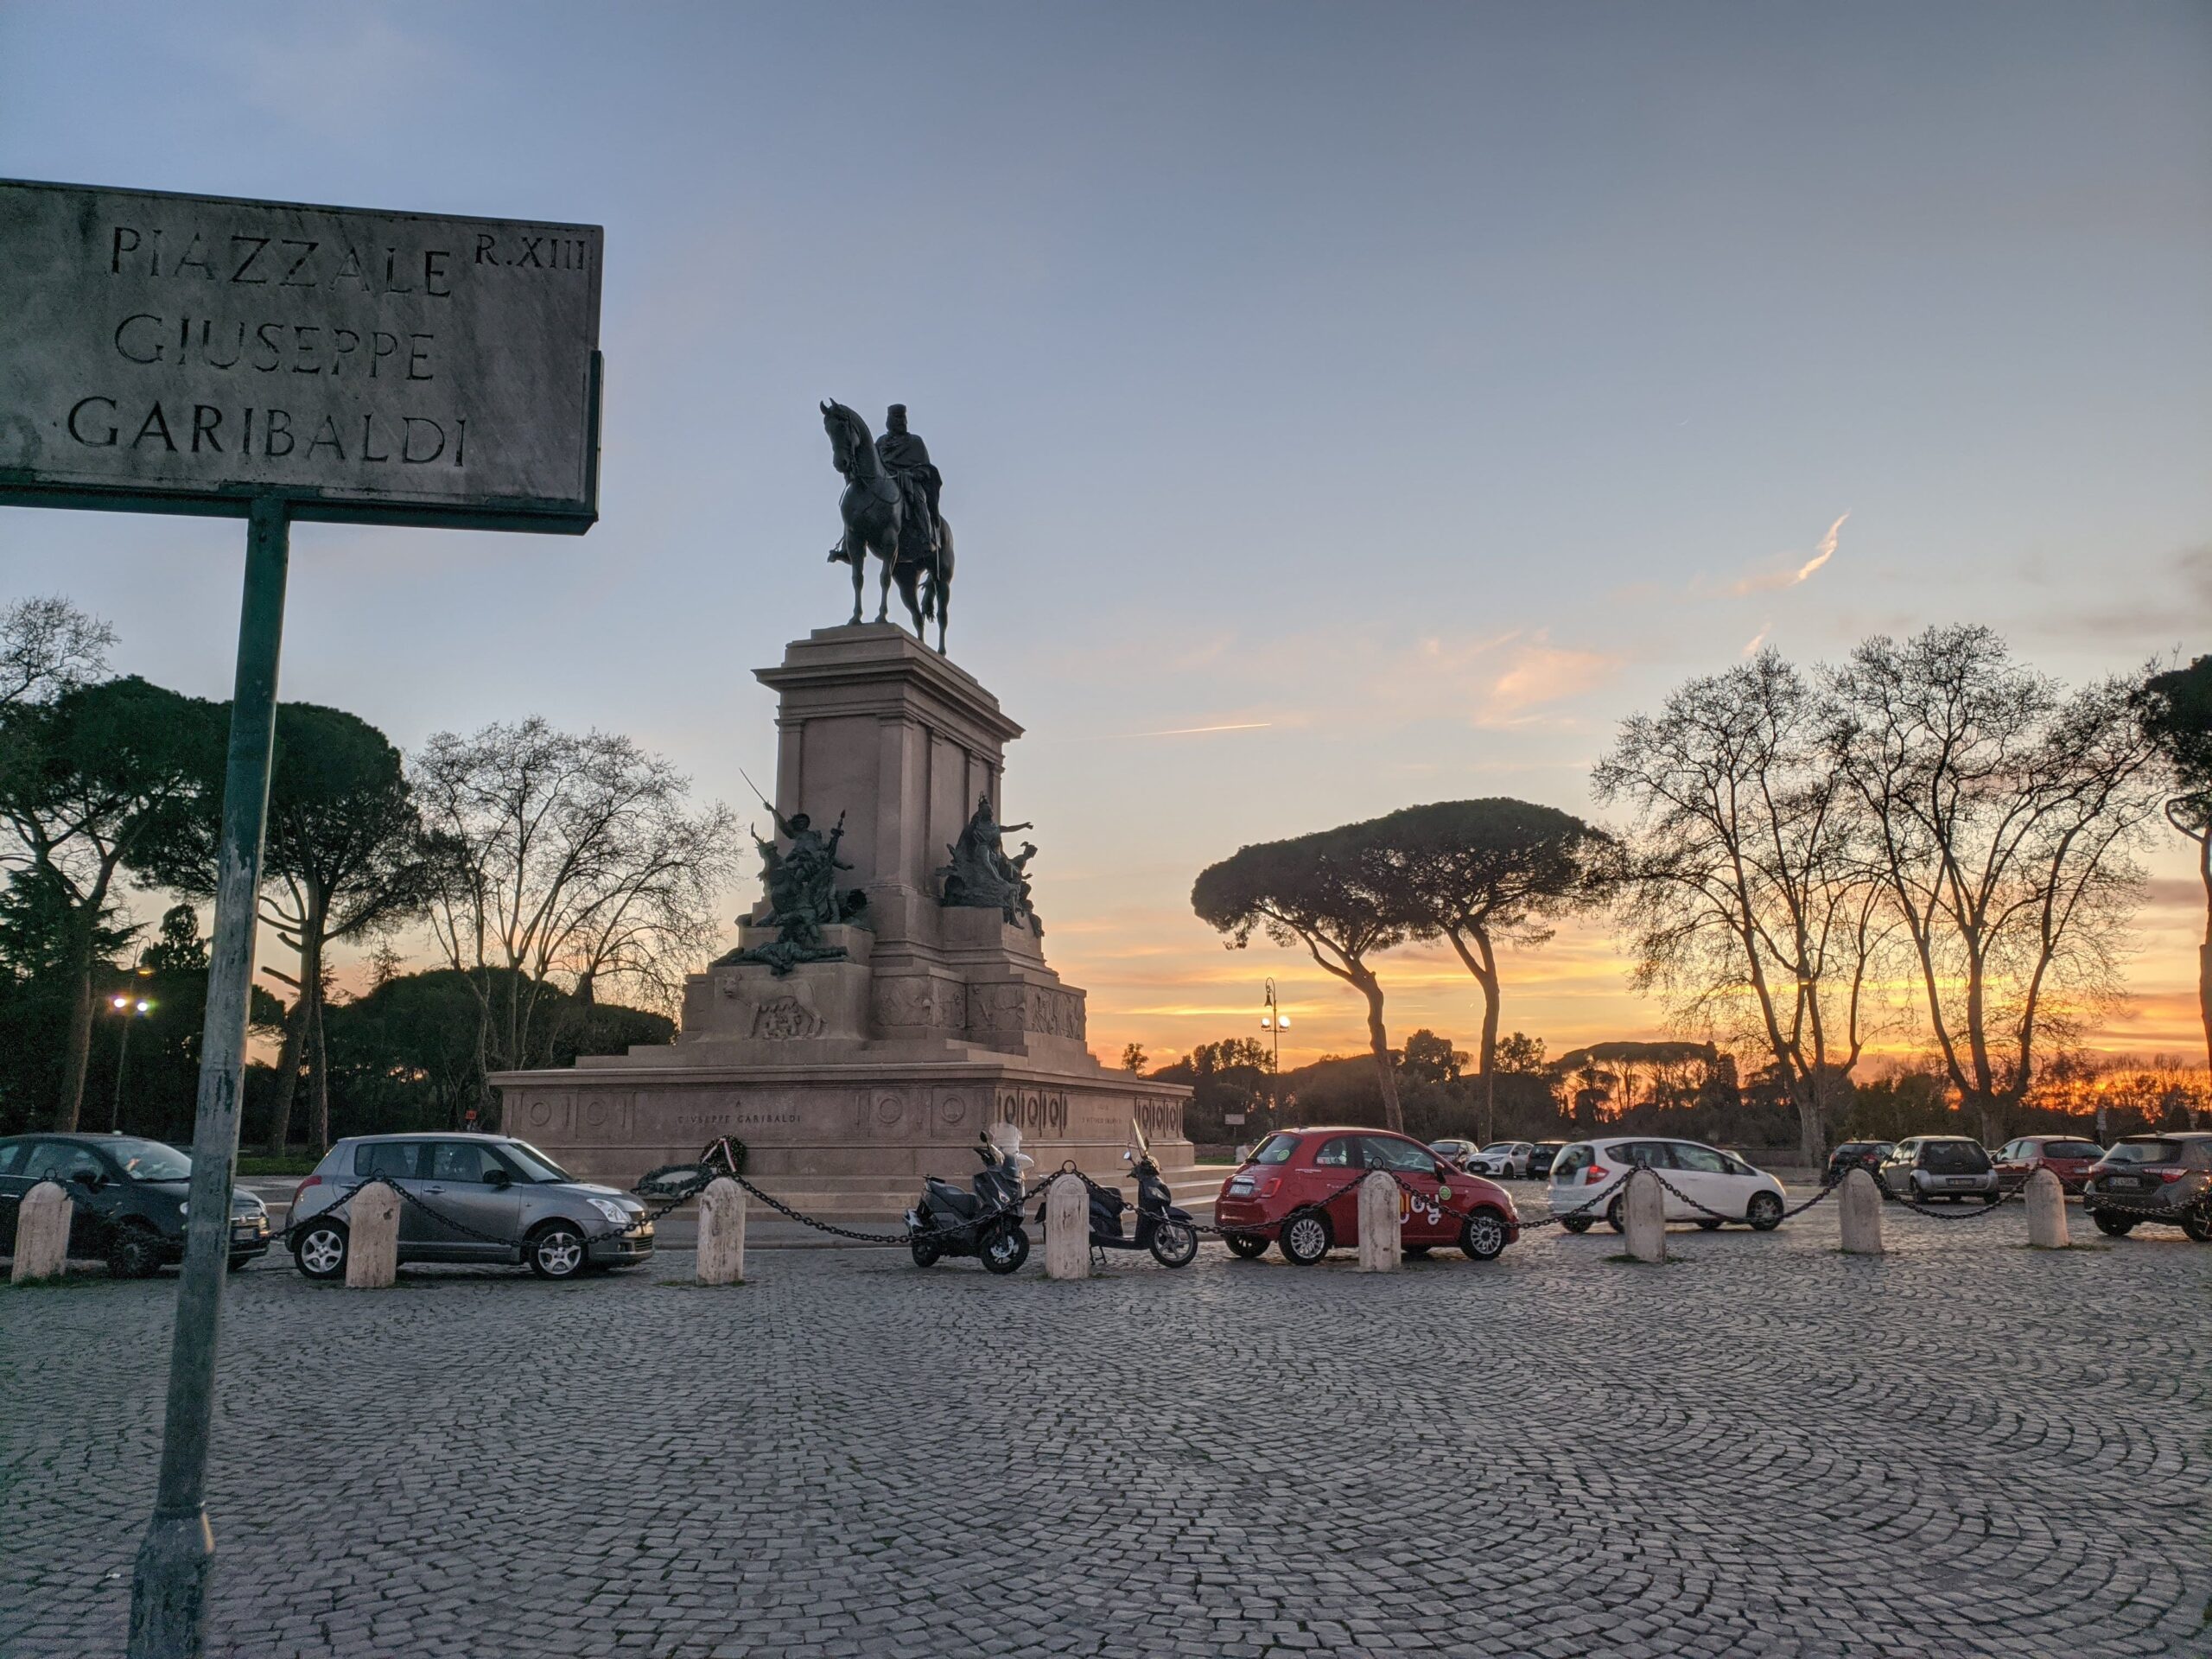 Monumento ao entardecer, com a estátua de Giuseppe Garibaldi montado em um cavalo se destacando contra um céu colorido pelo pôr do sol, localizado em uma praça pavimentada com carros estacionados e pinheiros-marítimos ao fundo.